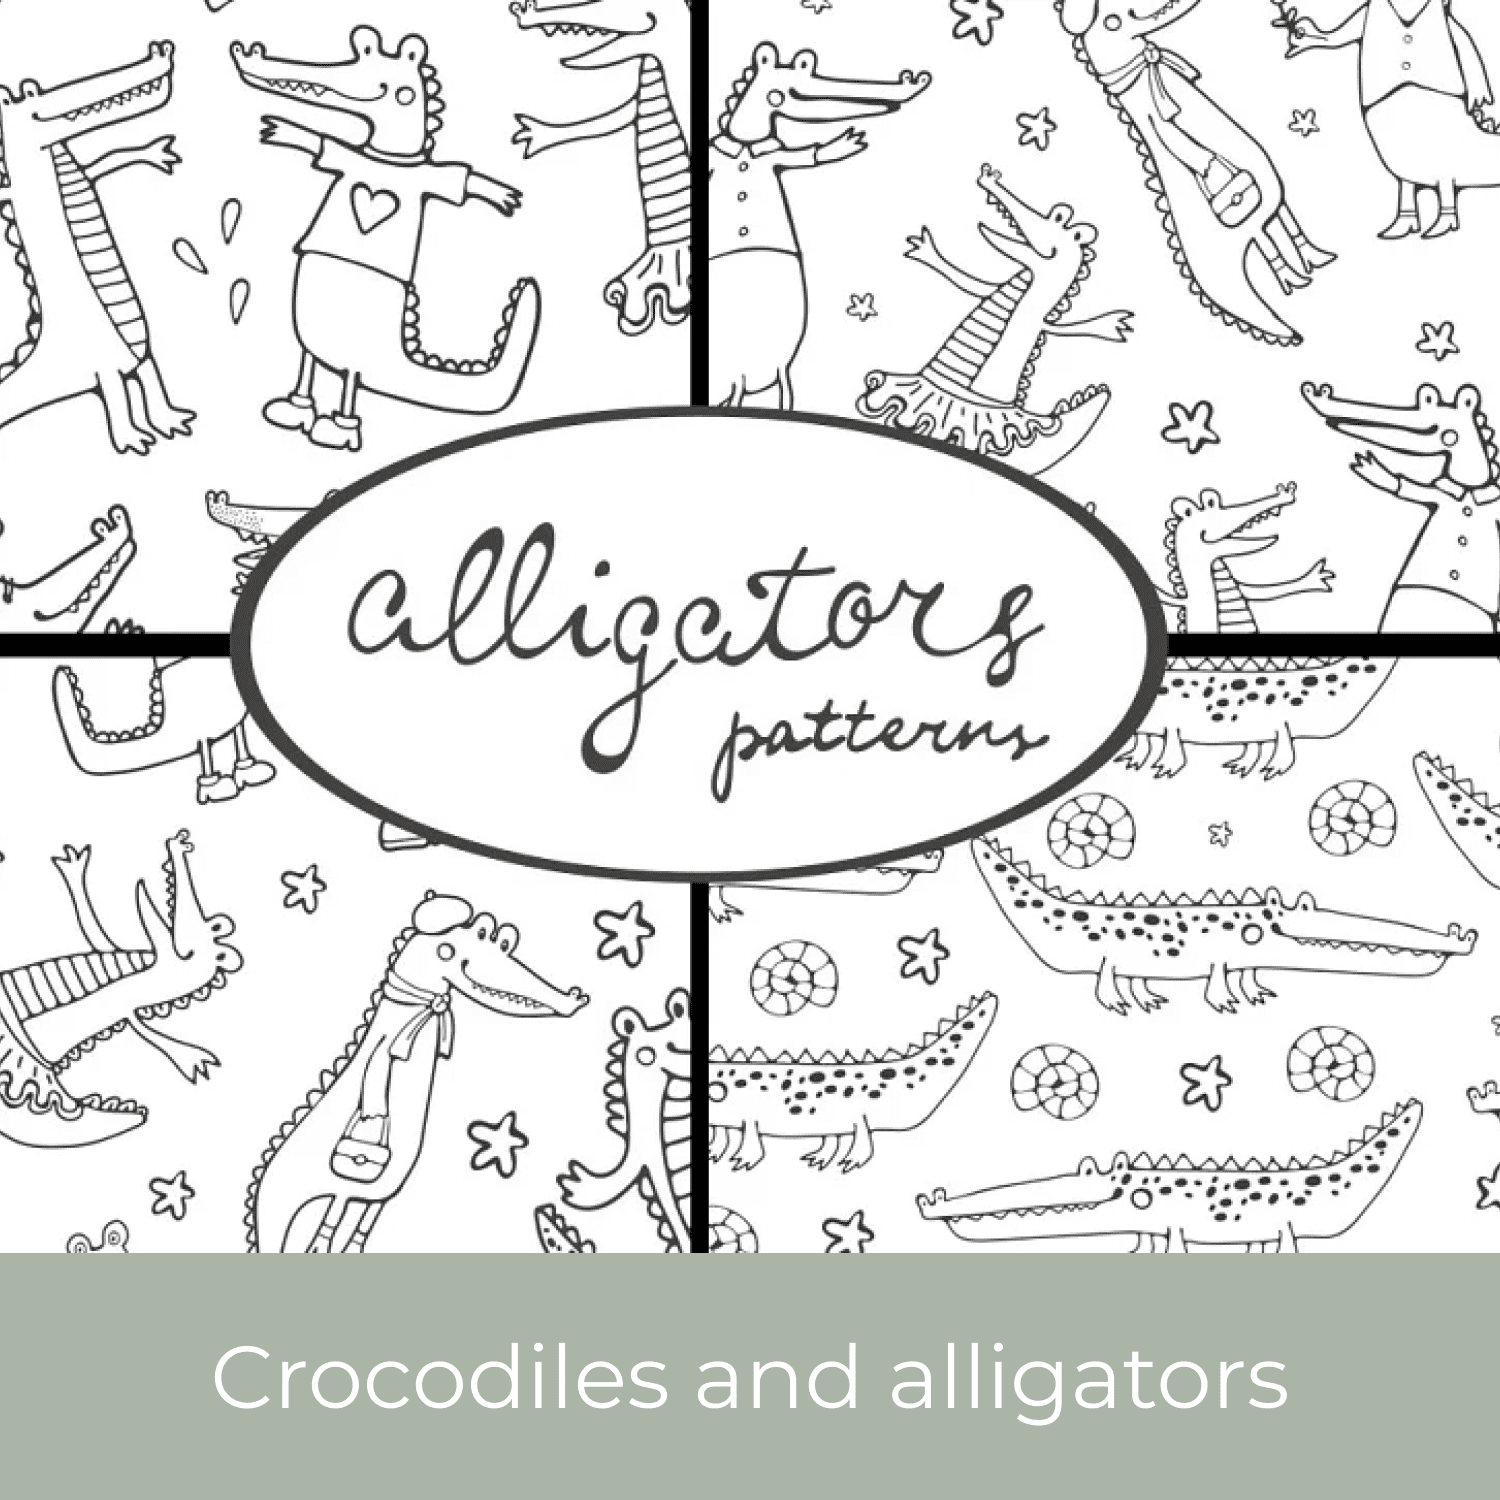 Crocodiles and alligators cover.